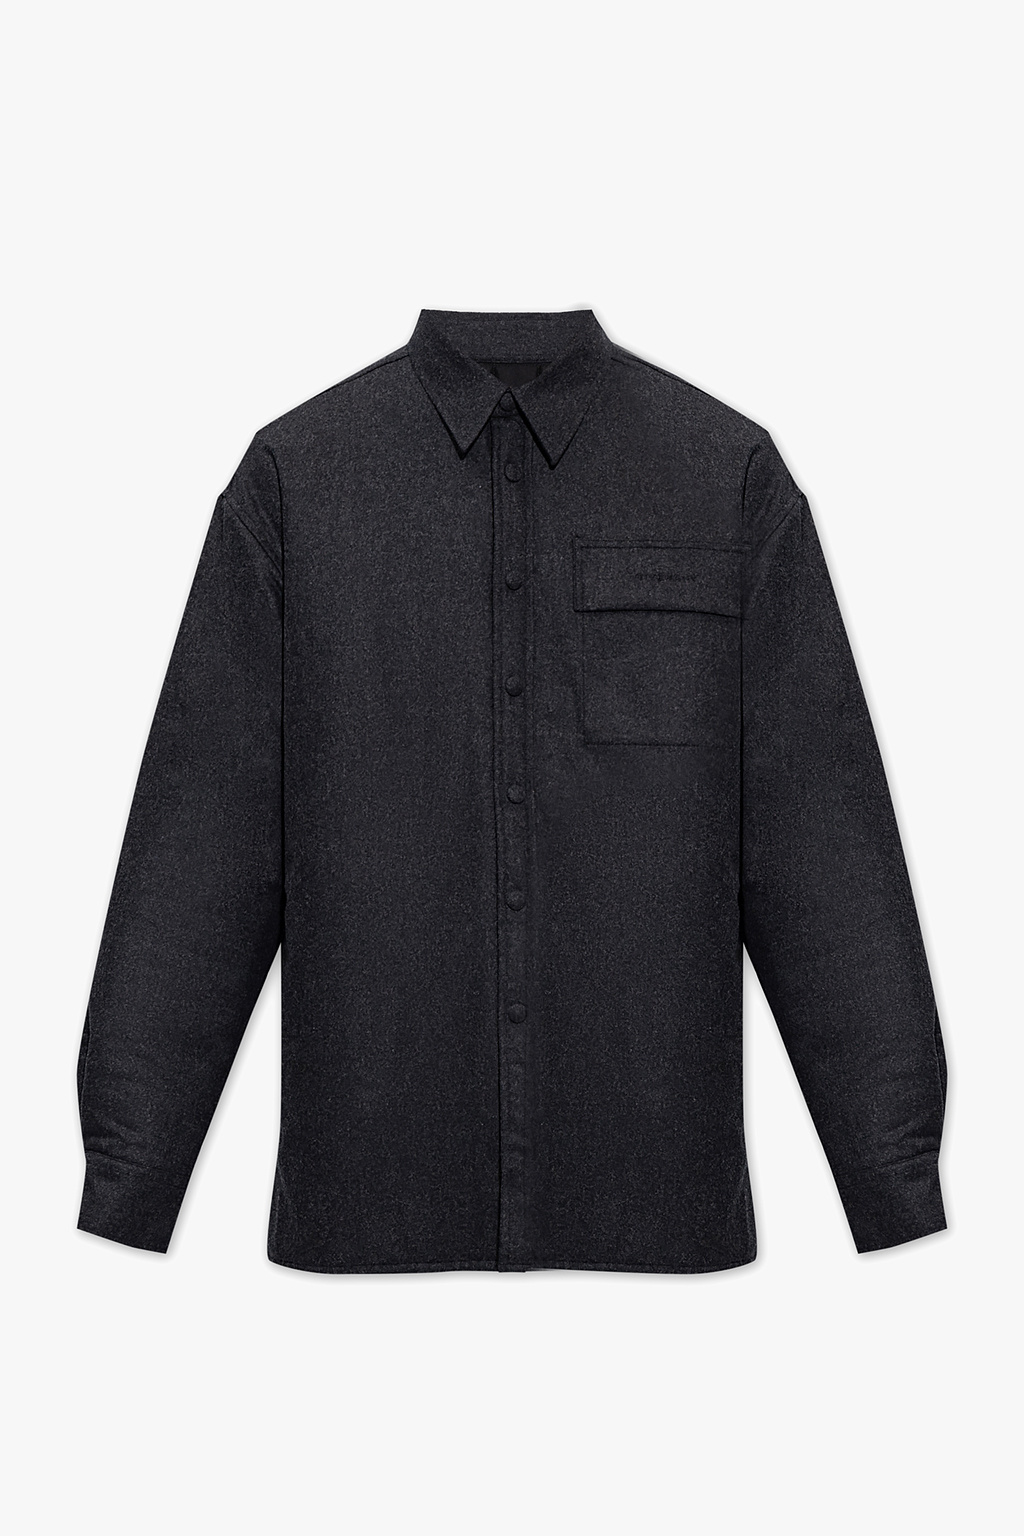 Givenchy Shirt jacket